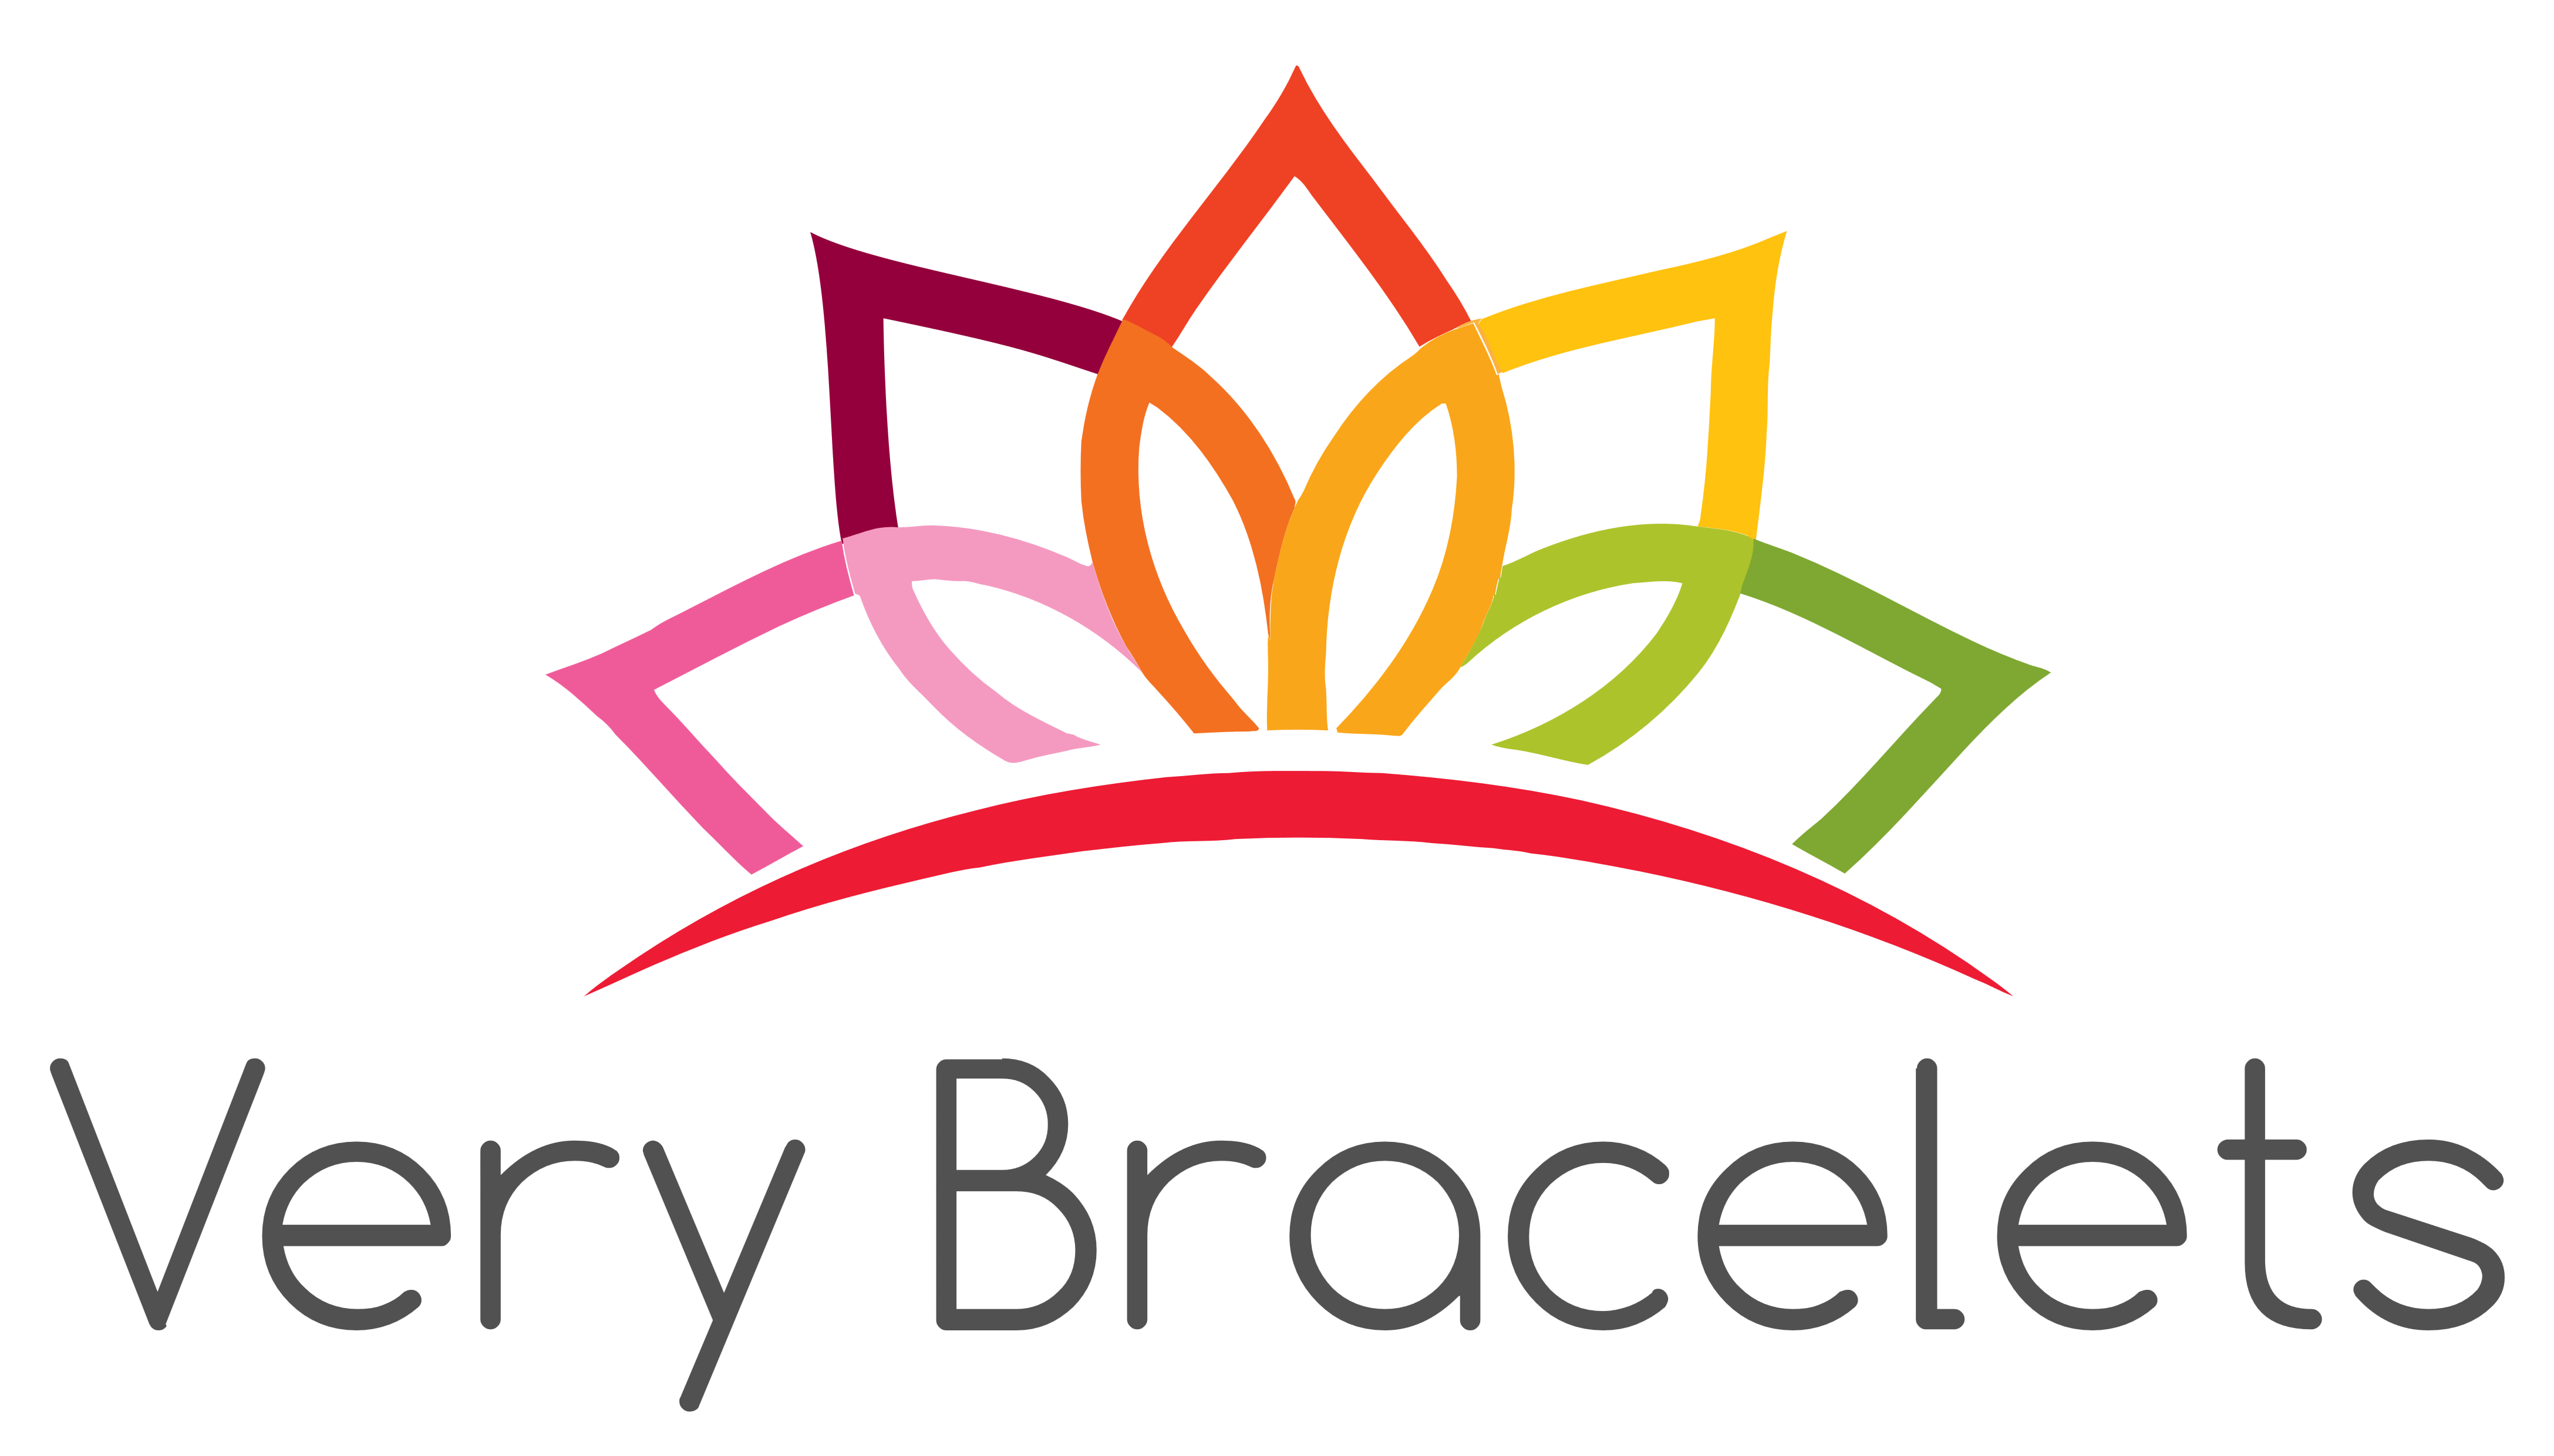 Bracelet Logo - Very Bracelets